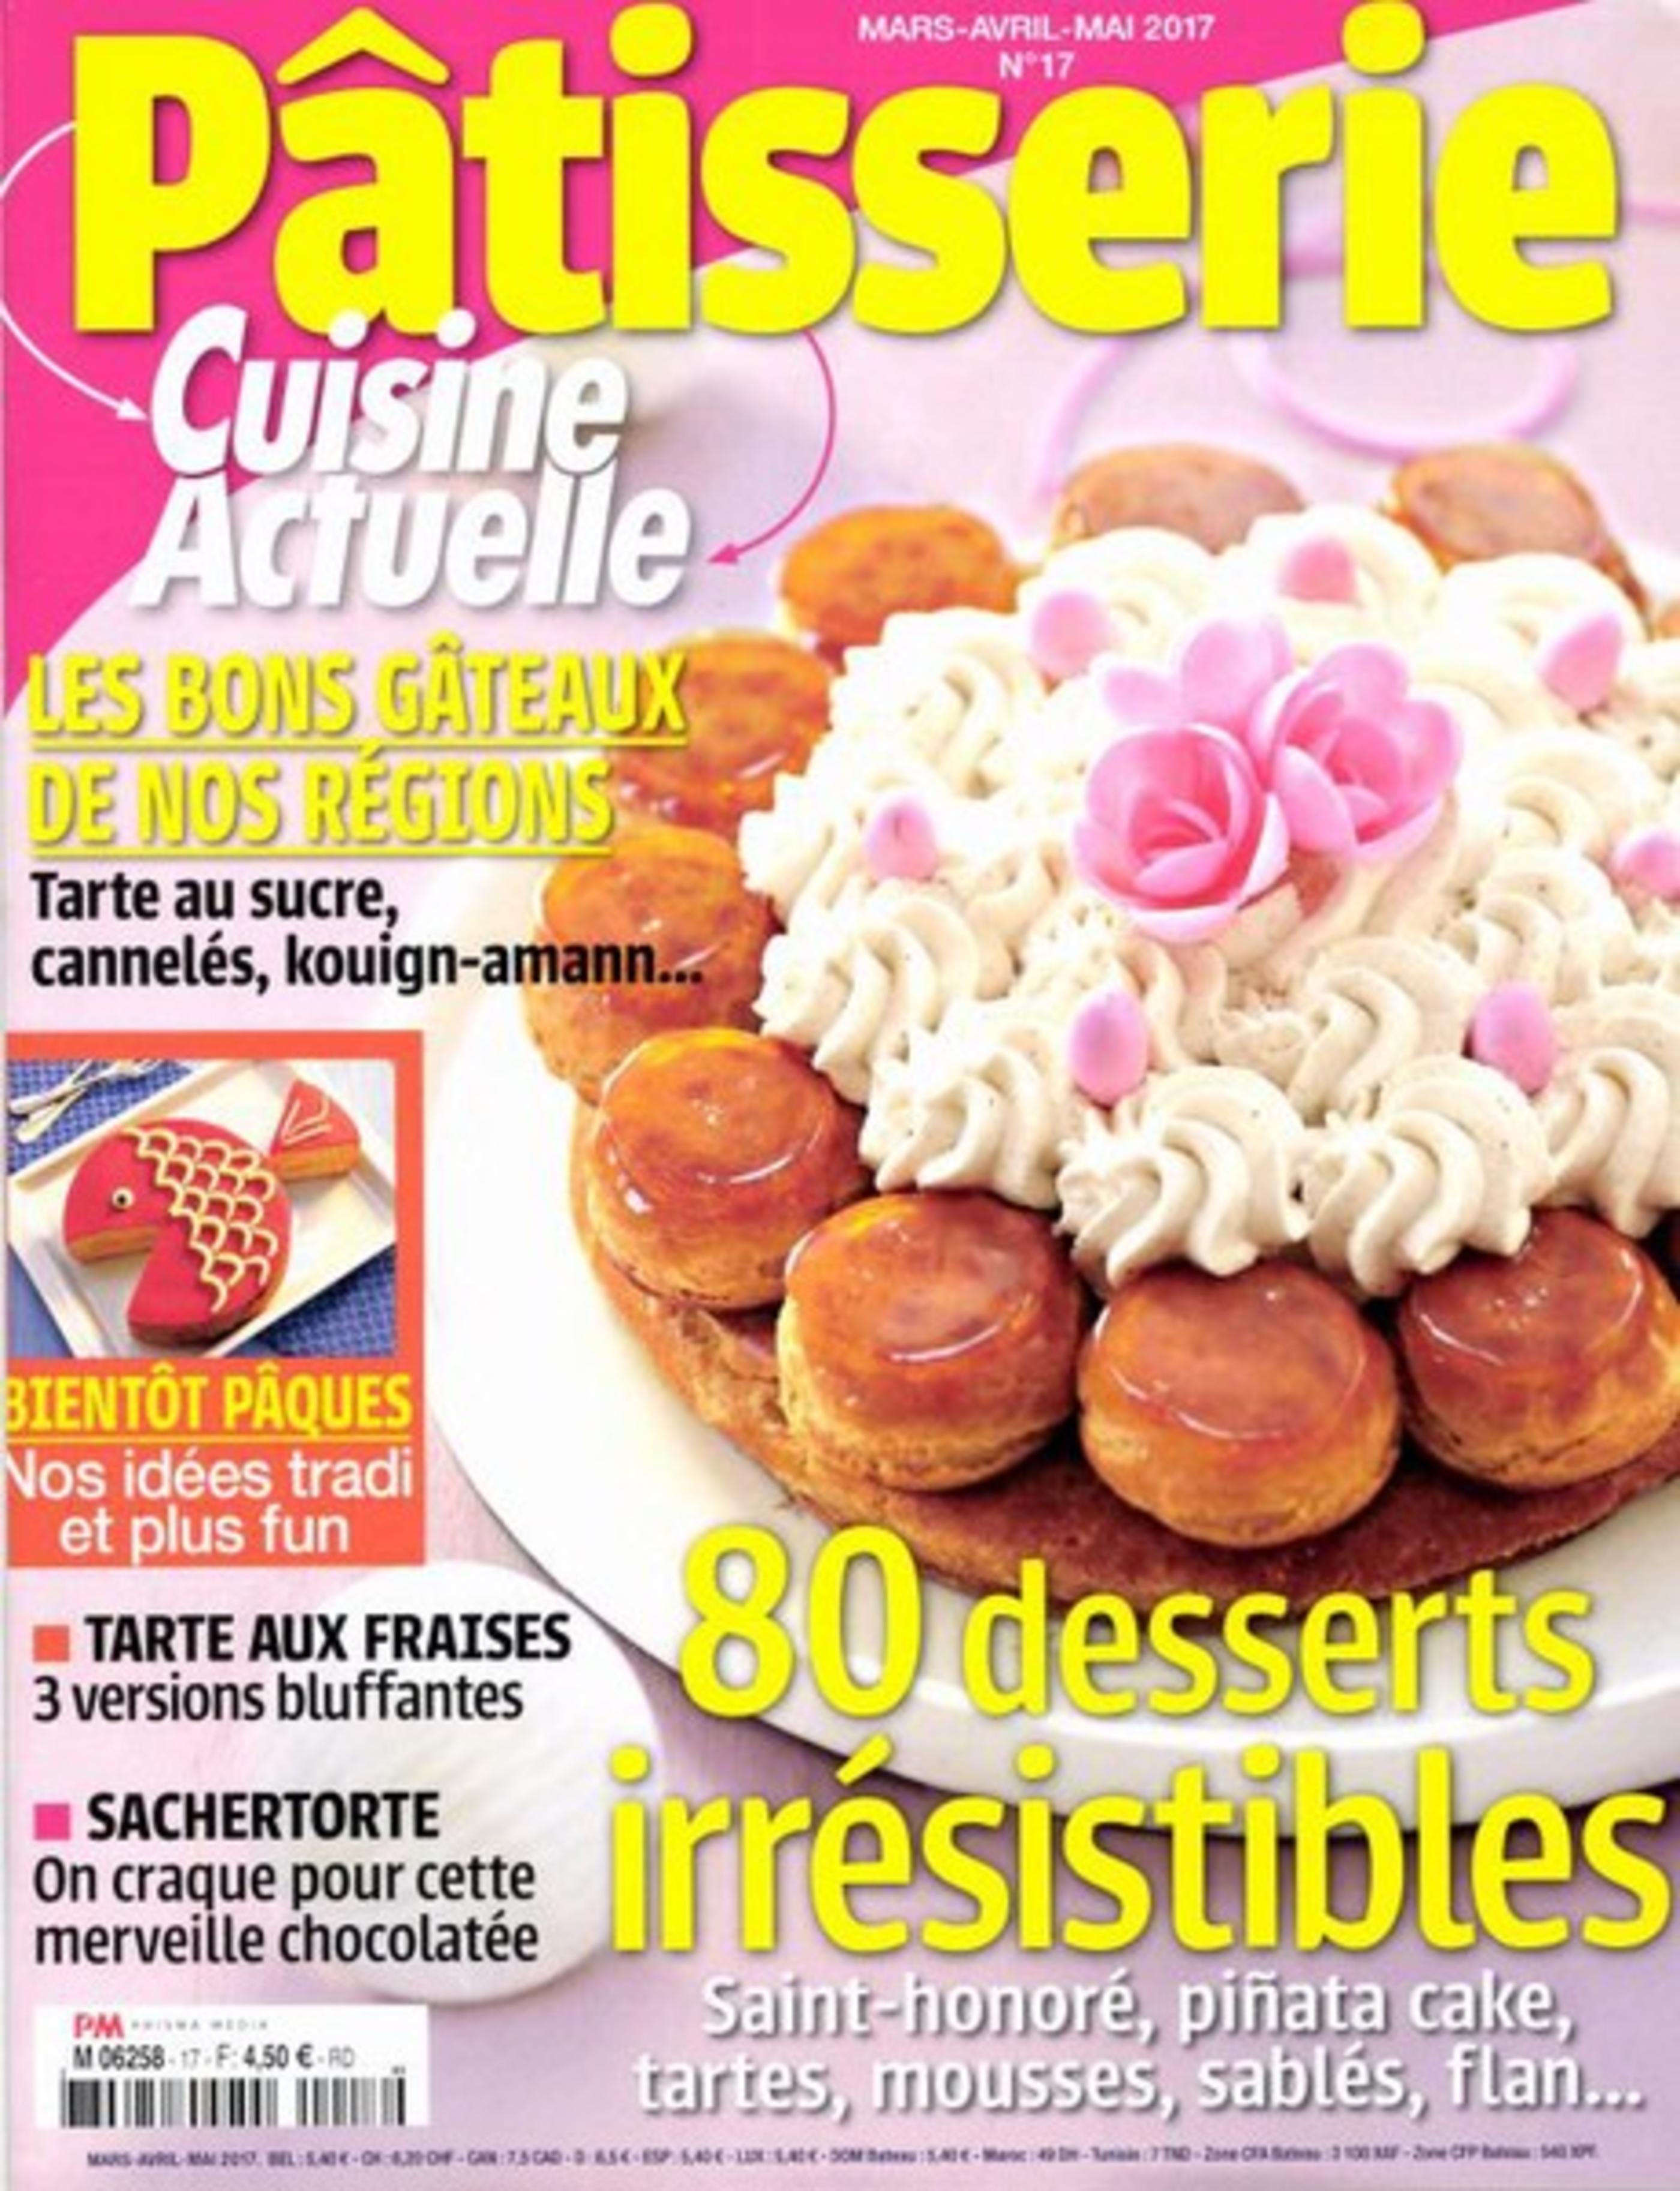 Le couteau Funky Jean Dubost Pradel, magazine Patisserie Cuisine Actuelle Mars 2017